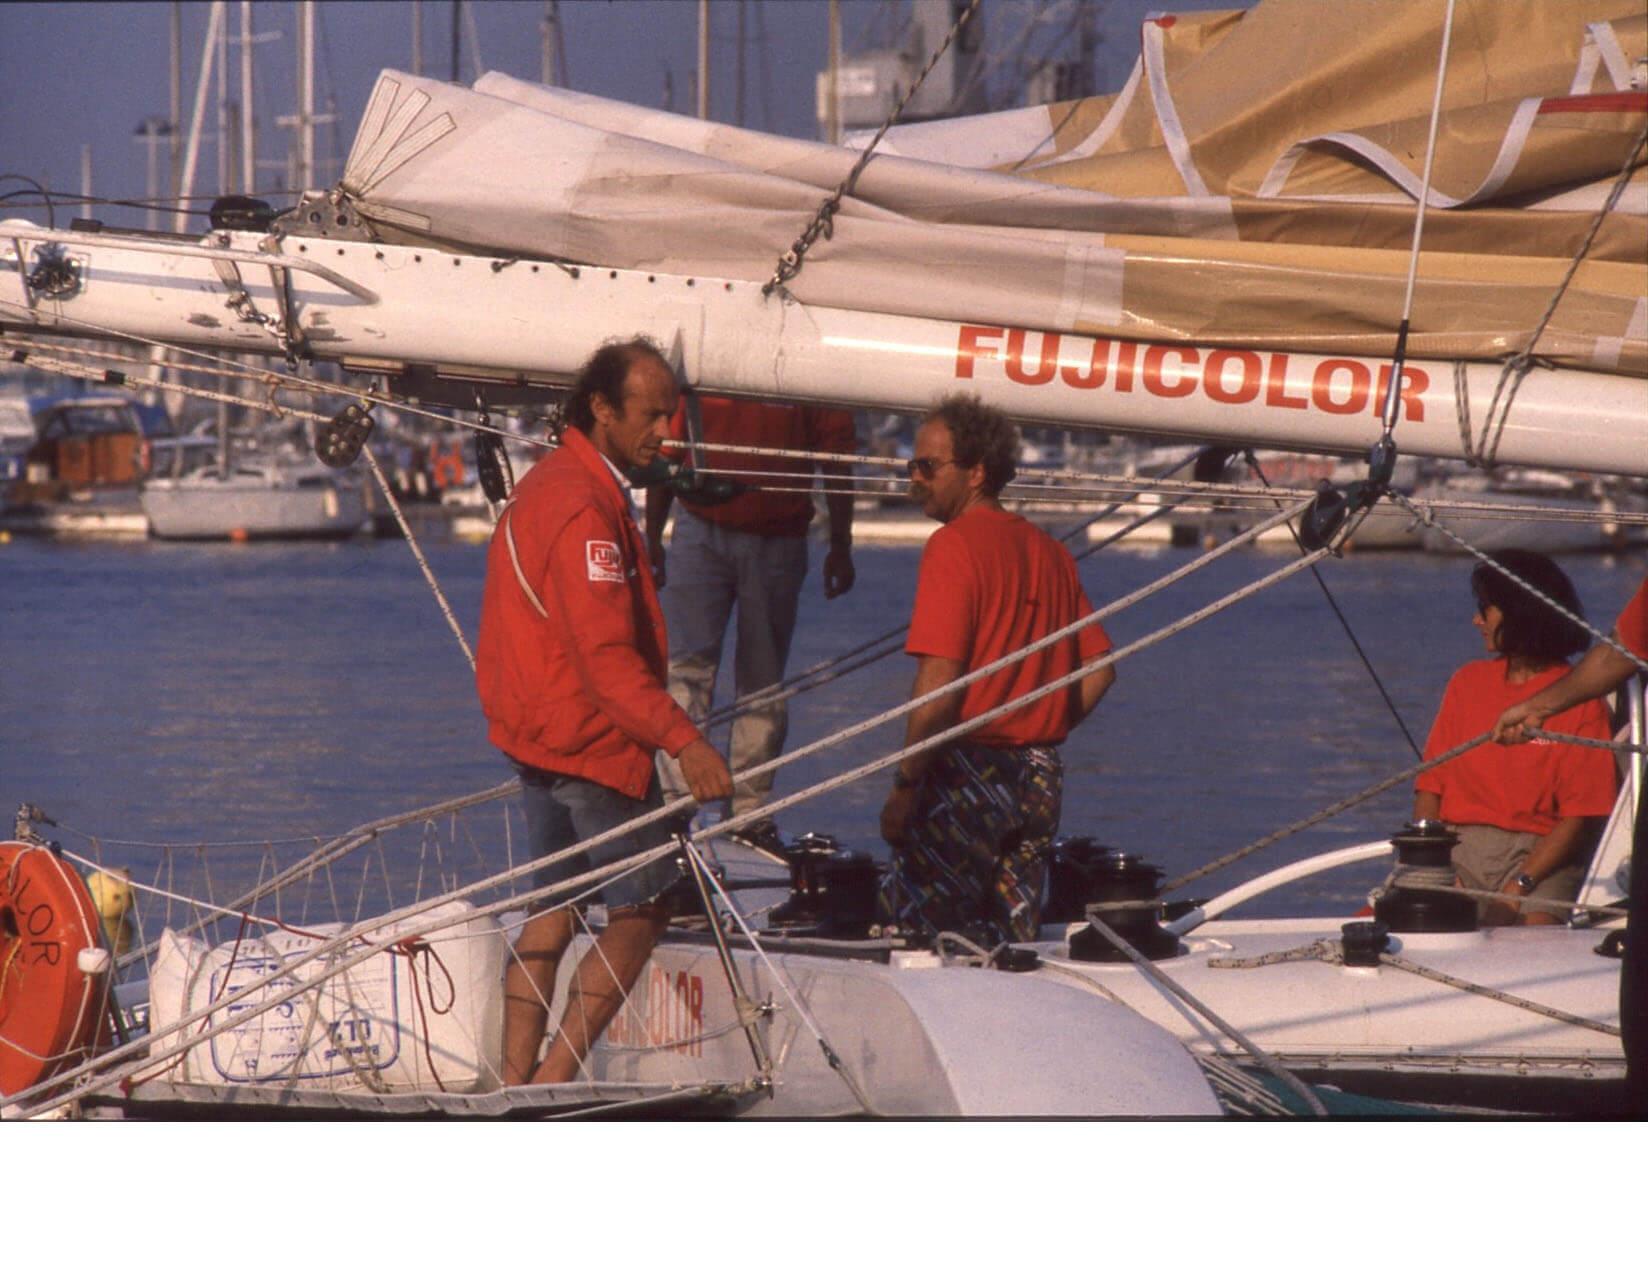 16- L'ami François Brillant dit Pollux avec Mike Birch sur Fujicolor au tour de l'Europe, 1989